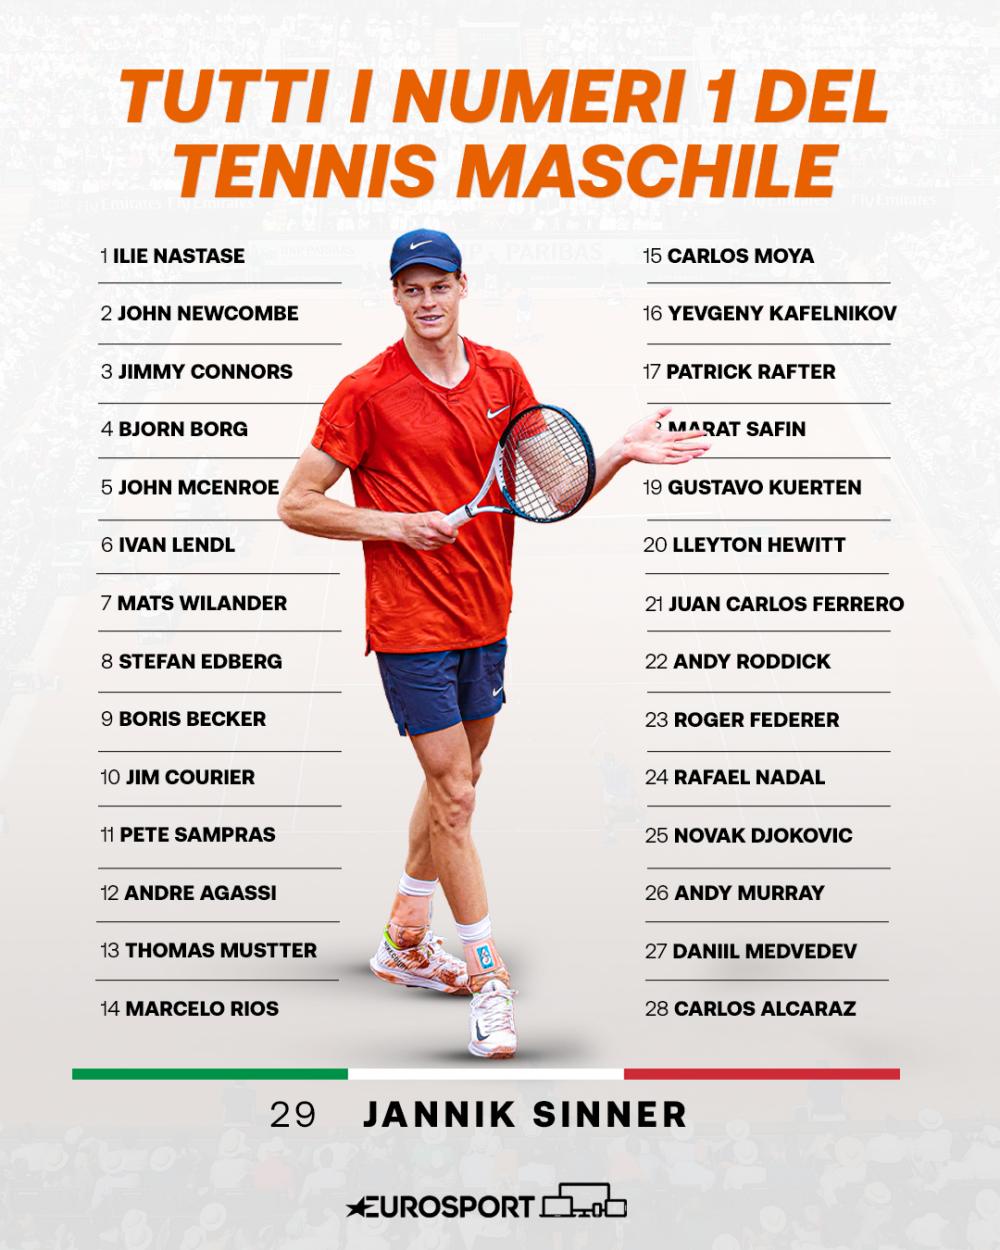 Sinner là tay vợt nam thứ 29 giữ vị trí số 1 trên bảng xếp hạng ATP. Ảnh: Eurosport